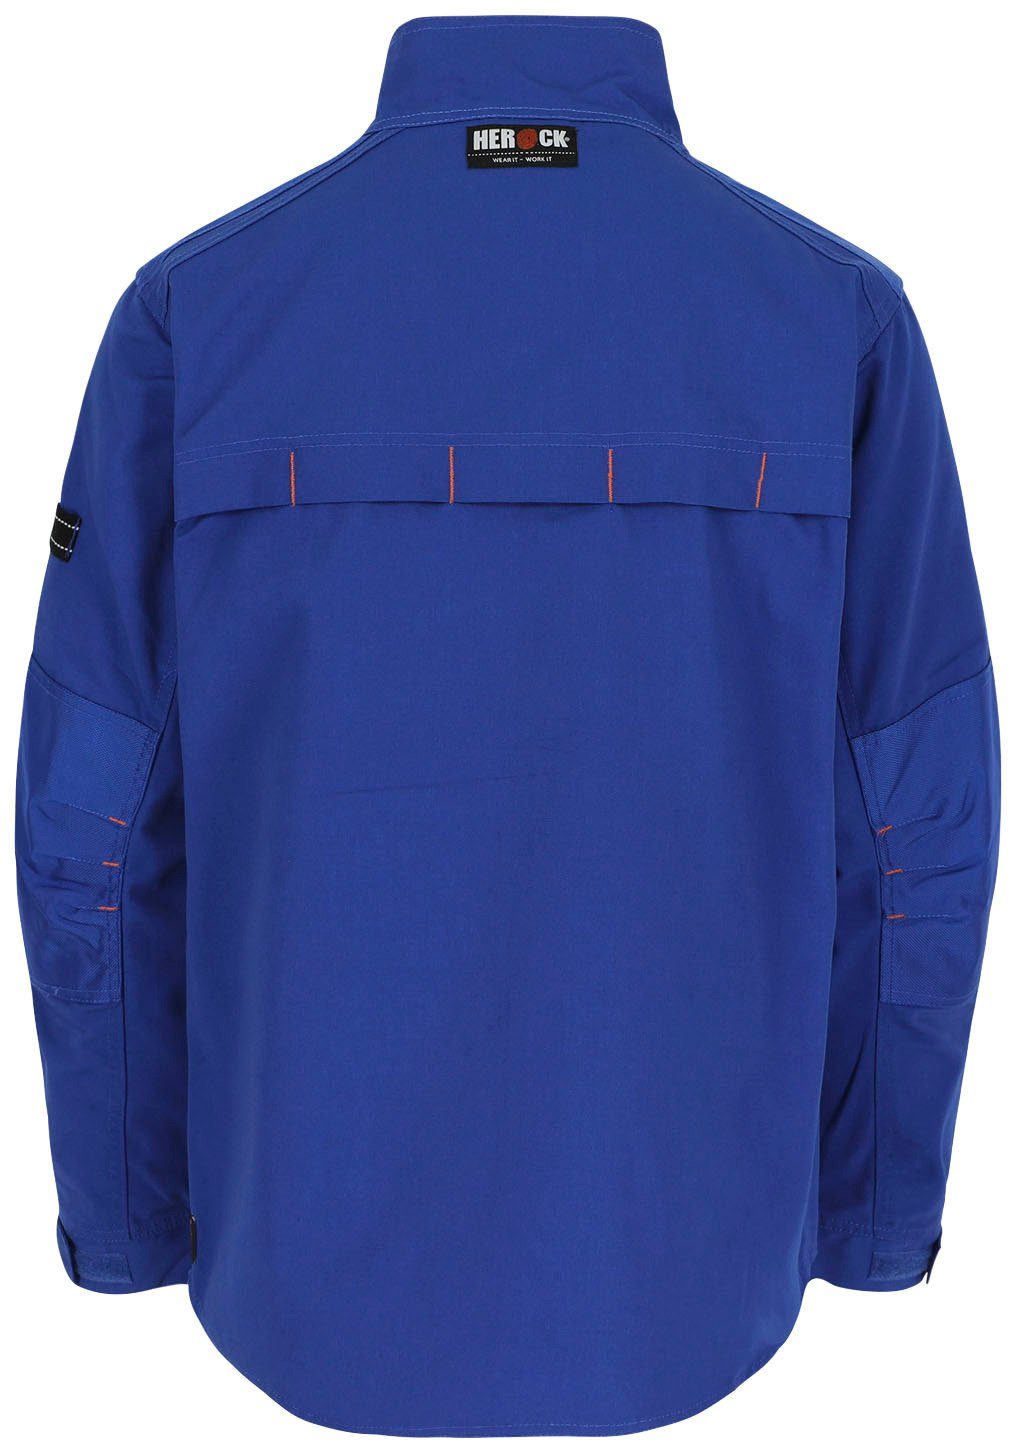 Bündchen 7 Herock verstellbare Jacke - robust Taschen Anzar - Arbeitsjacke Wasserabweisend - blau